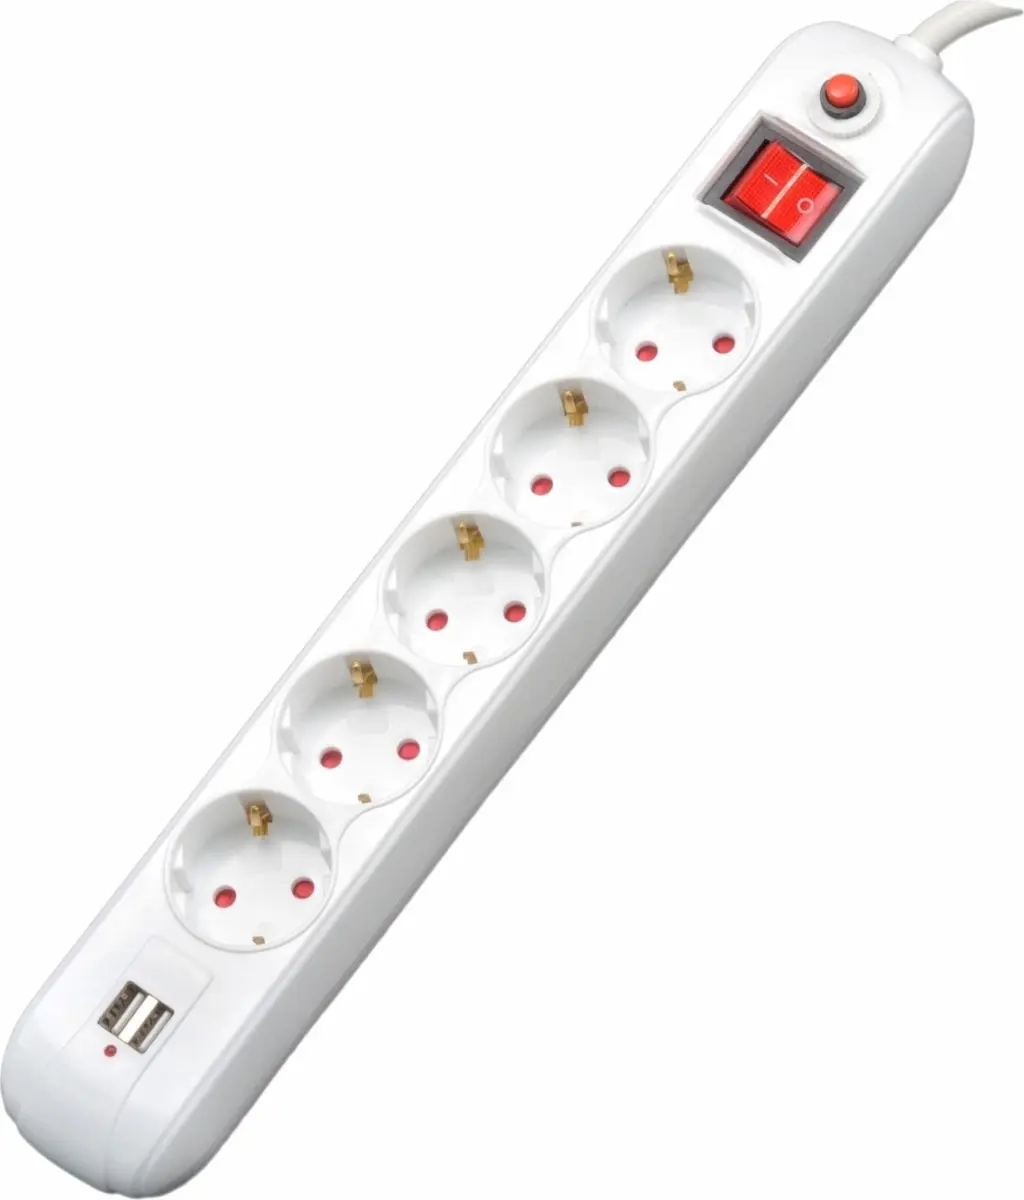 Prelungitor Spacer PP-5-45 USB, Schuko x 5, conectare prin Schuko (T), USB x 2, cablu 4.5 m, 16 A, max. 3500W, protectie supratensiune, Alb